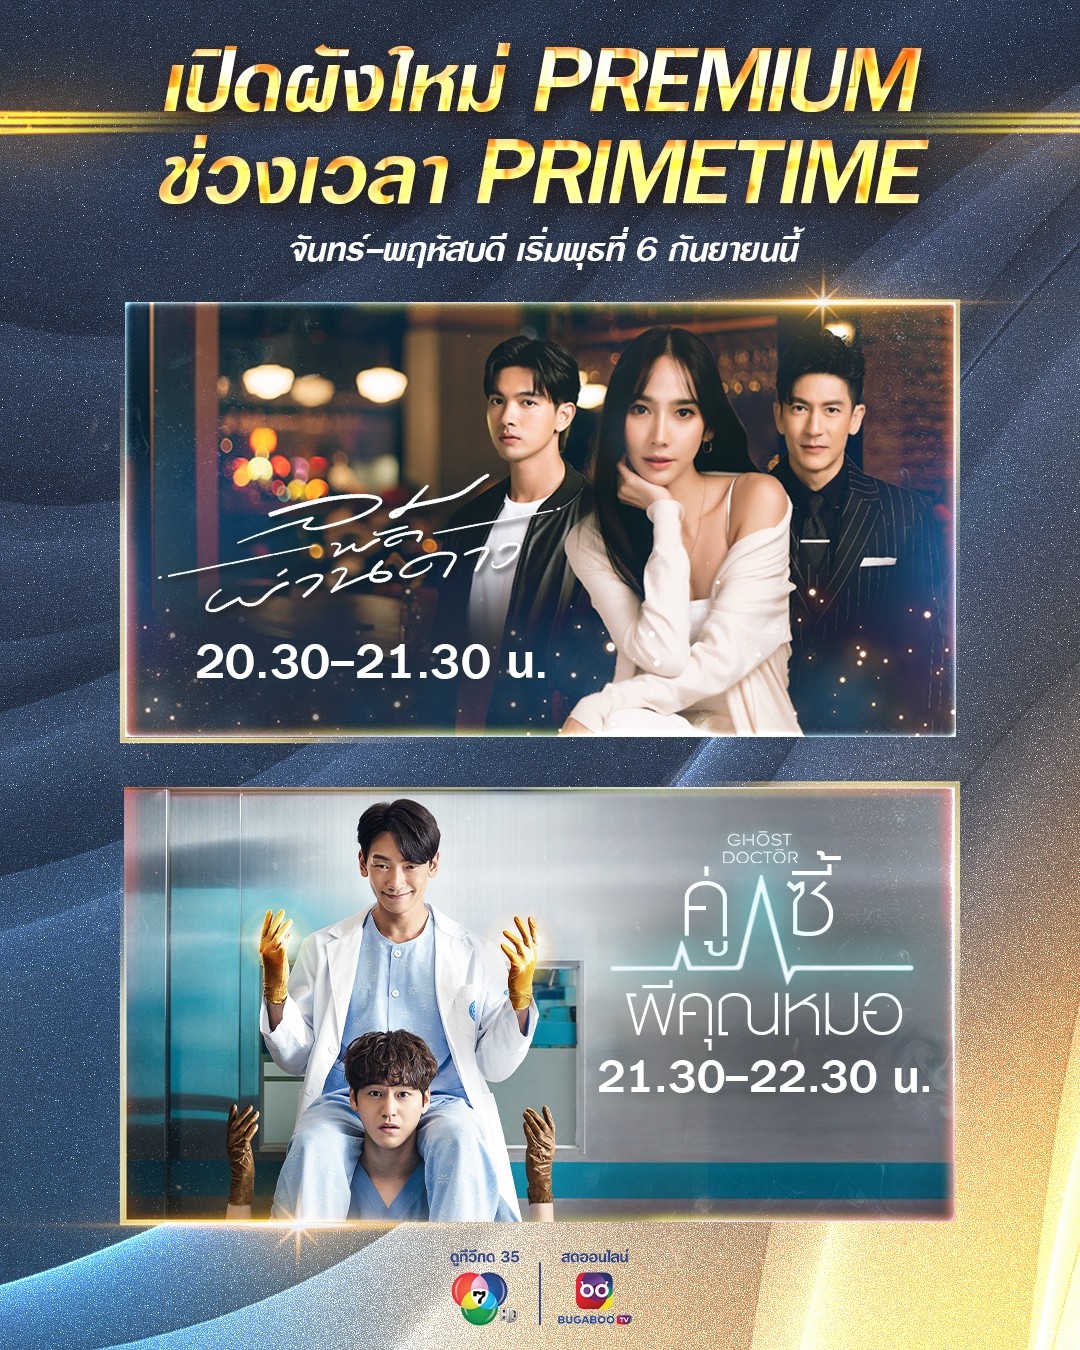 ช่อง 7Hd เปิดผังใหม่ Premium ลดเวลาละครไทยเพิ่มเวลาซีรีส์เกาหลี  ทุกวันจันทร์ - พฤหัสบดี เริ่ม 6 กันยายน นี้ - Pantip